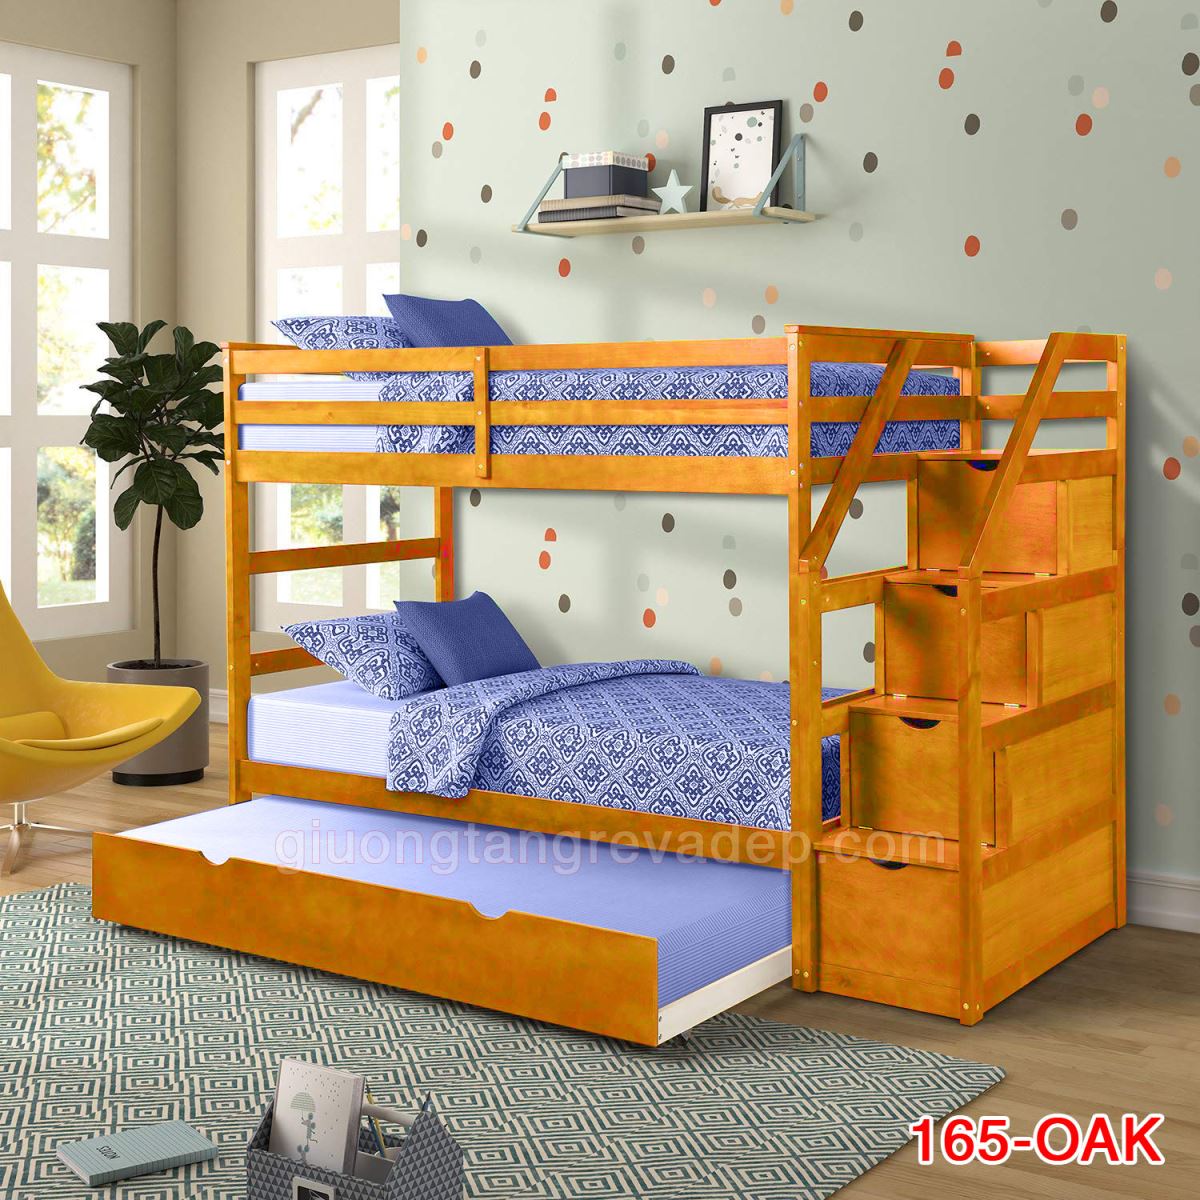 Giường tầng trẻ em bằng gỗ K.Bed 165